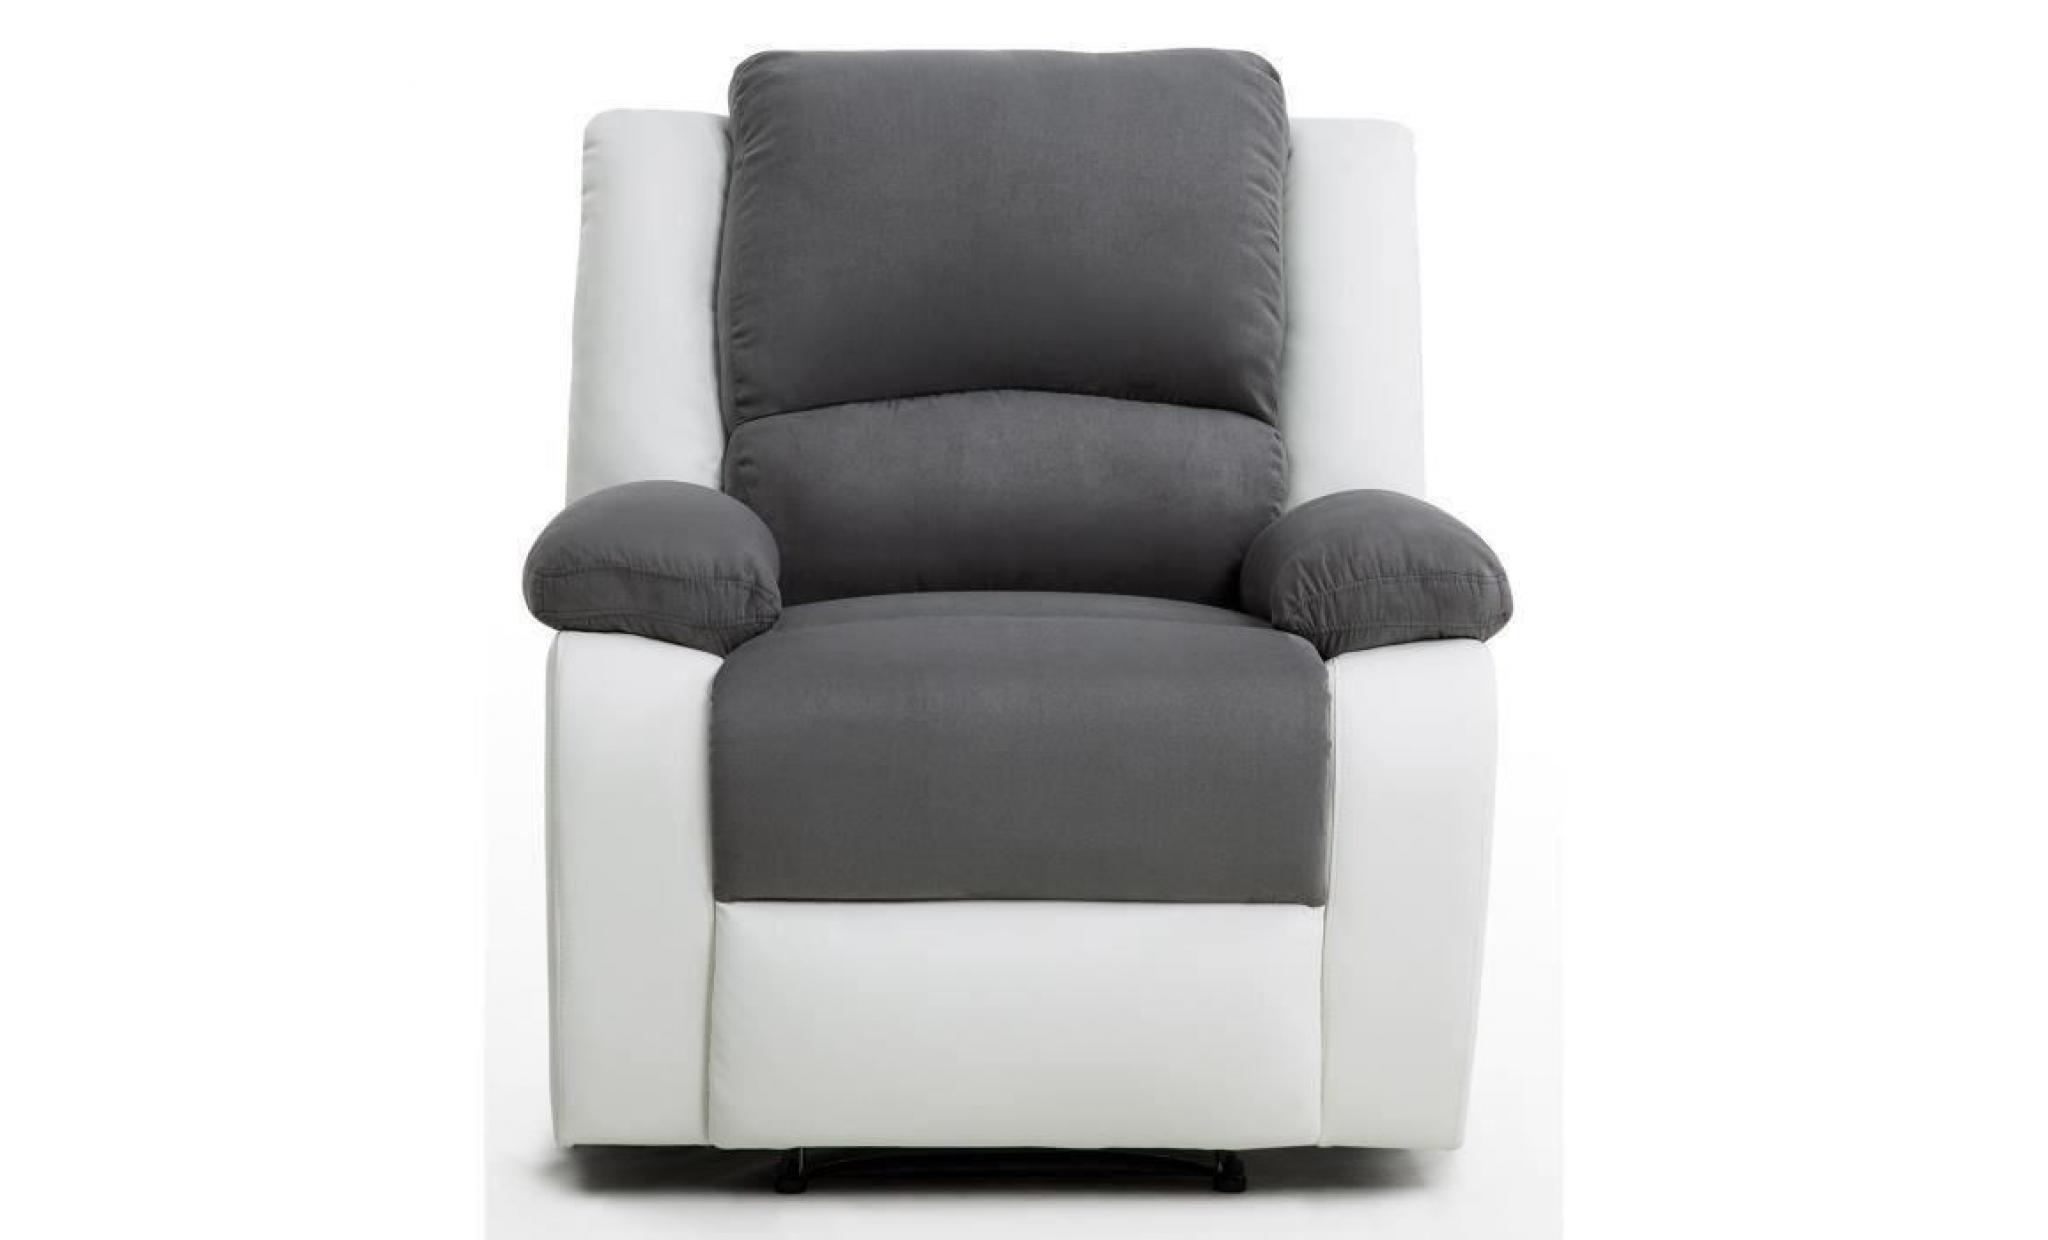 relax fauteuil relaxation   simili et tissu blanc et gris   style contemporain   l 86 x p 90 cm pas cher